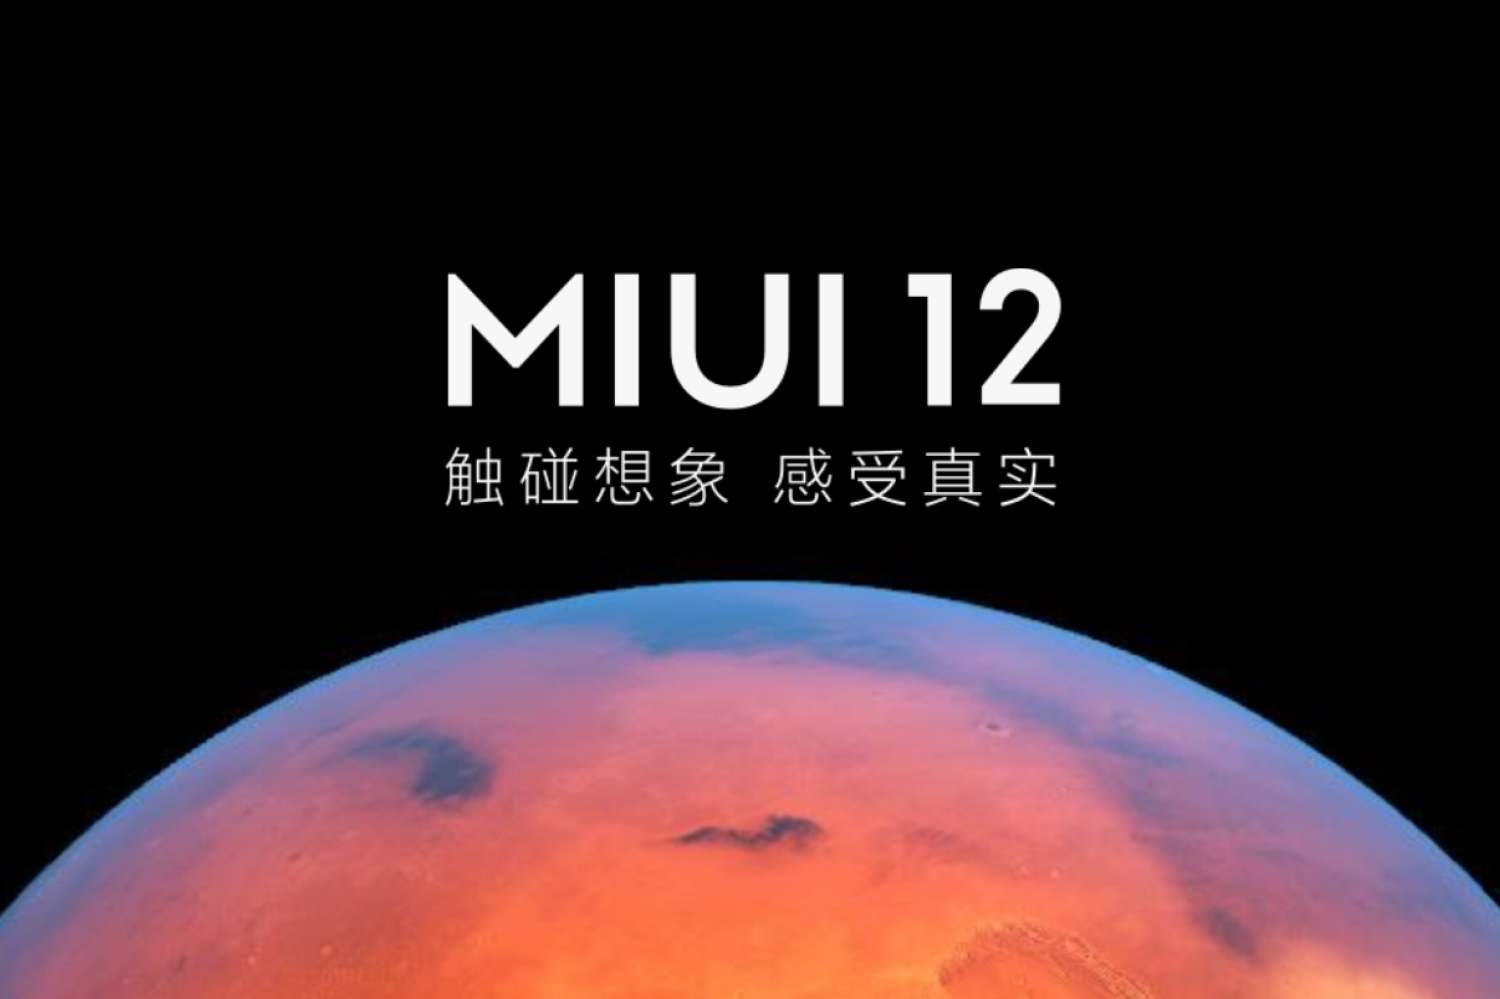 小米miui12更新:更多万象息屏图案加入